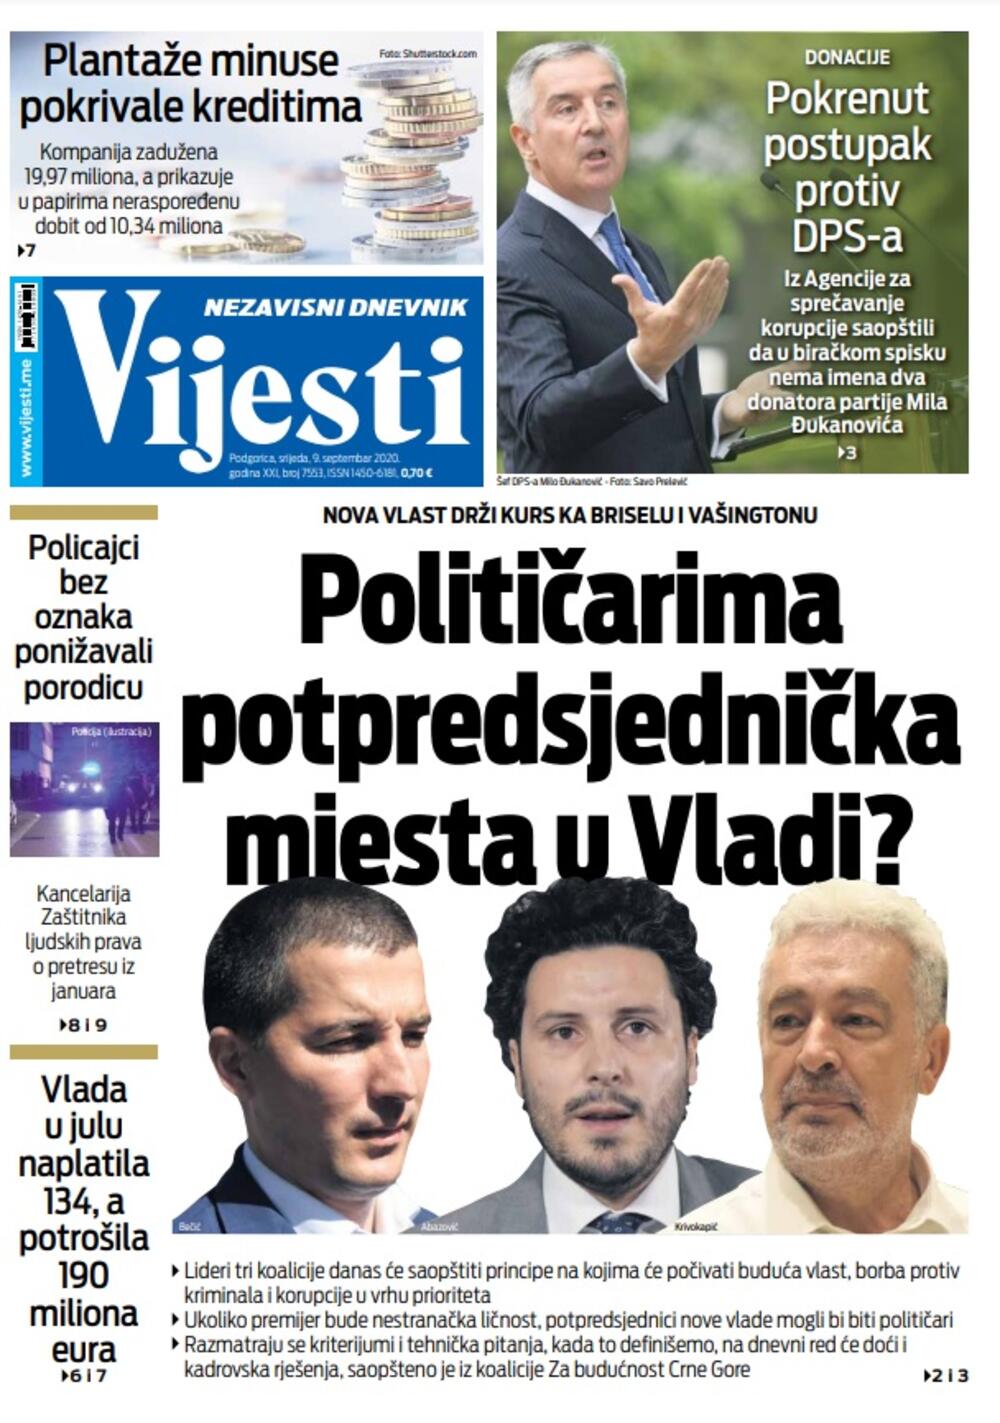 Naslovna strana "Vijesti" za utorak 8. septembar 2020. godine, Foto: Vijesti